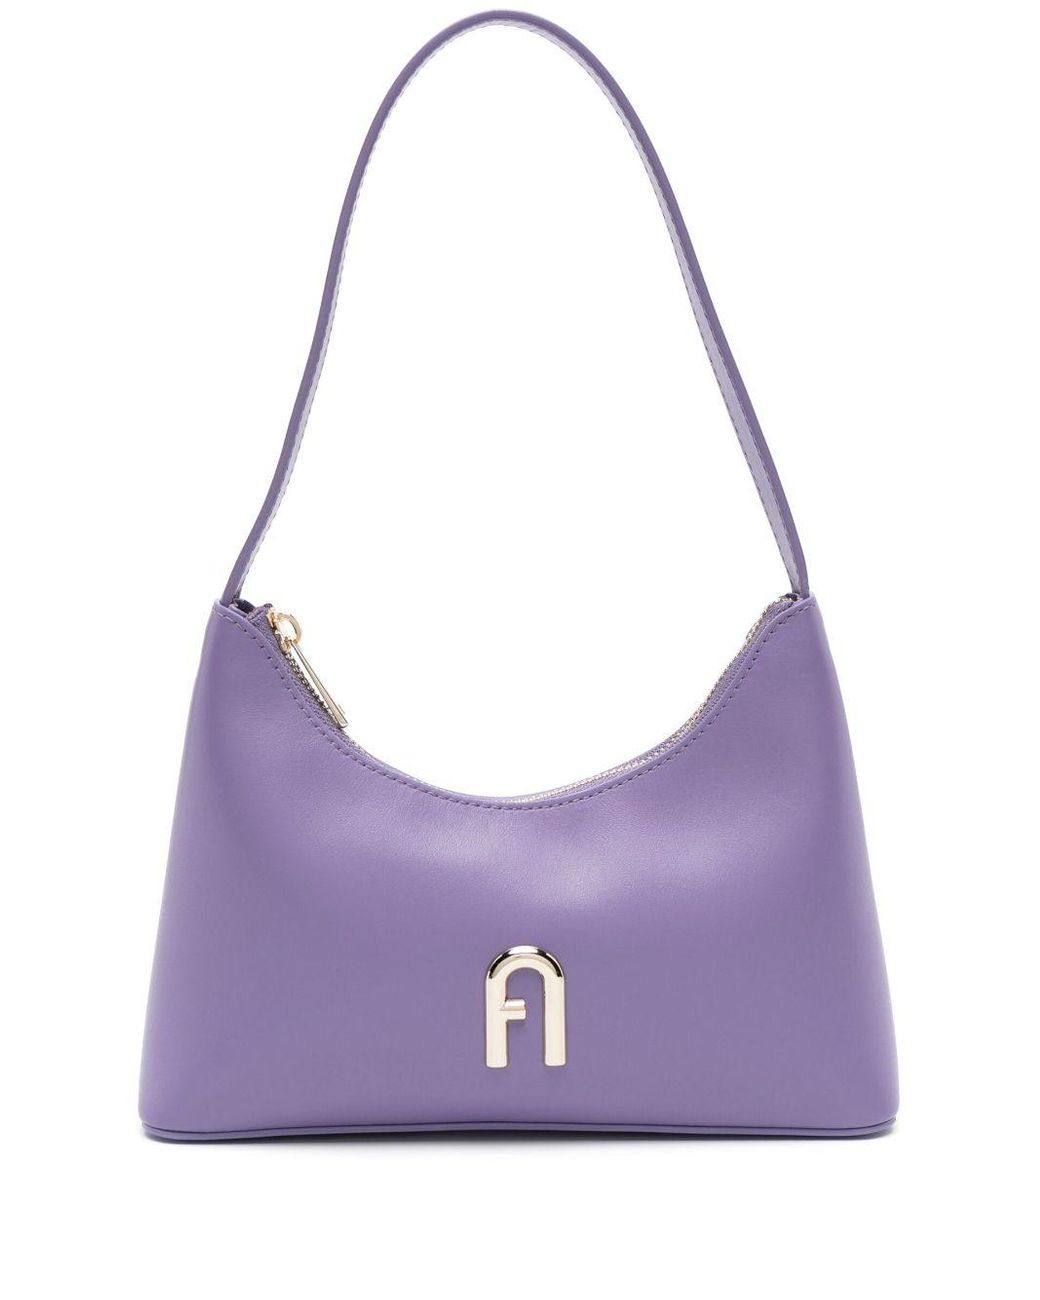 Furla Small Diamante Leather Tote Bag in Purple | Lyst